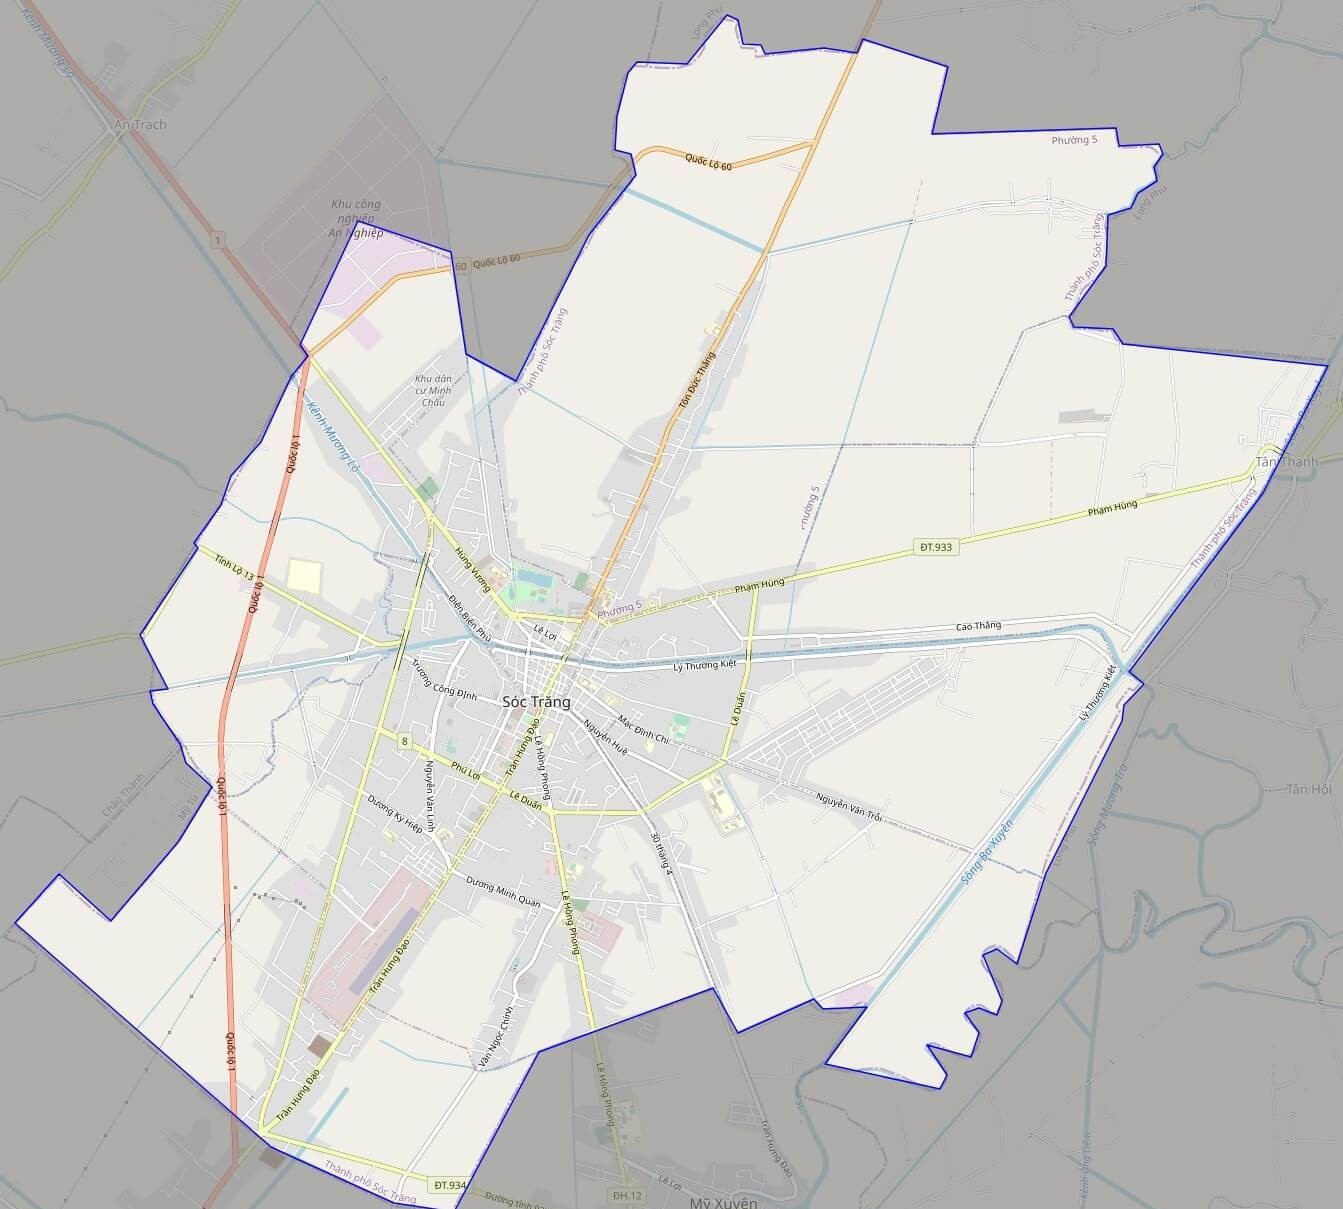 Bản đồ Sóc Trăng cập nhật những thông tin mới nhất, giúp người dân và du khách dễ dàng tìm kiếm thông tin về địa điểm và các hoạt động tại thành phố này. Hãy cùng xem hình ảnh để khám phá những địa điểm thú vị của Sóc Trăng trên bản đồ.